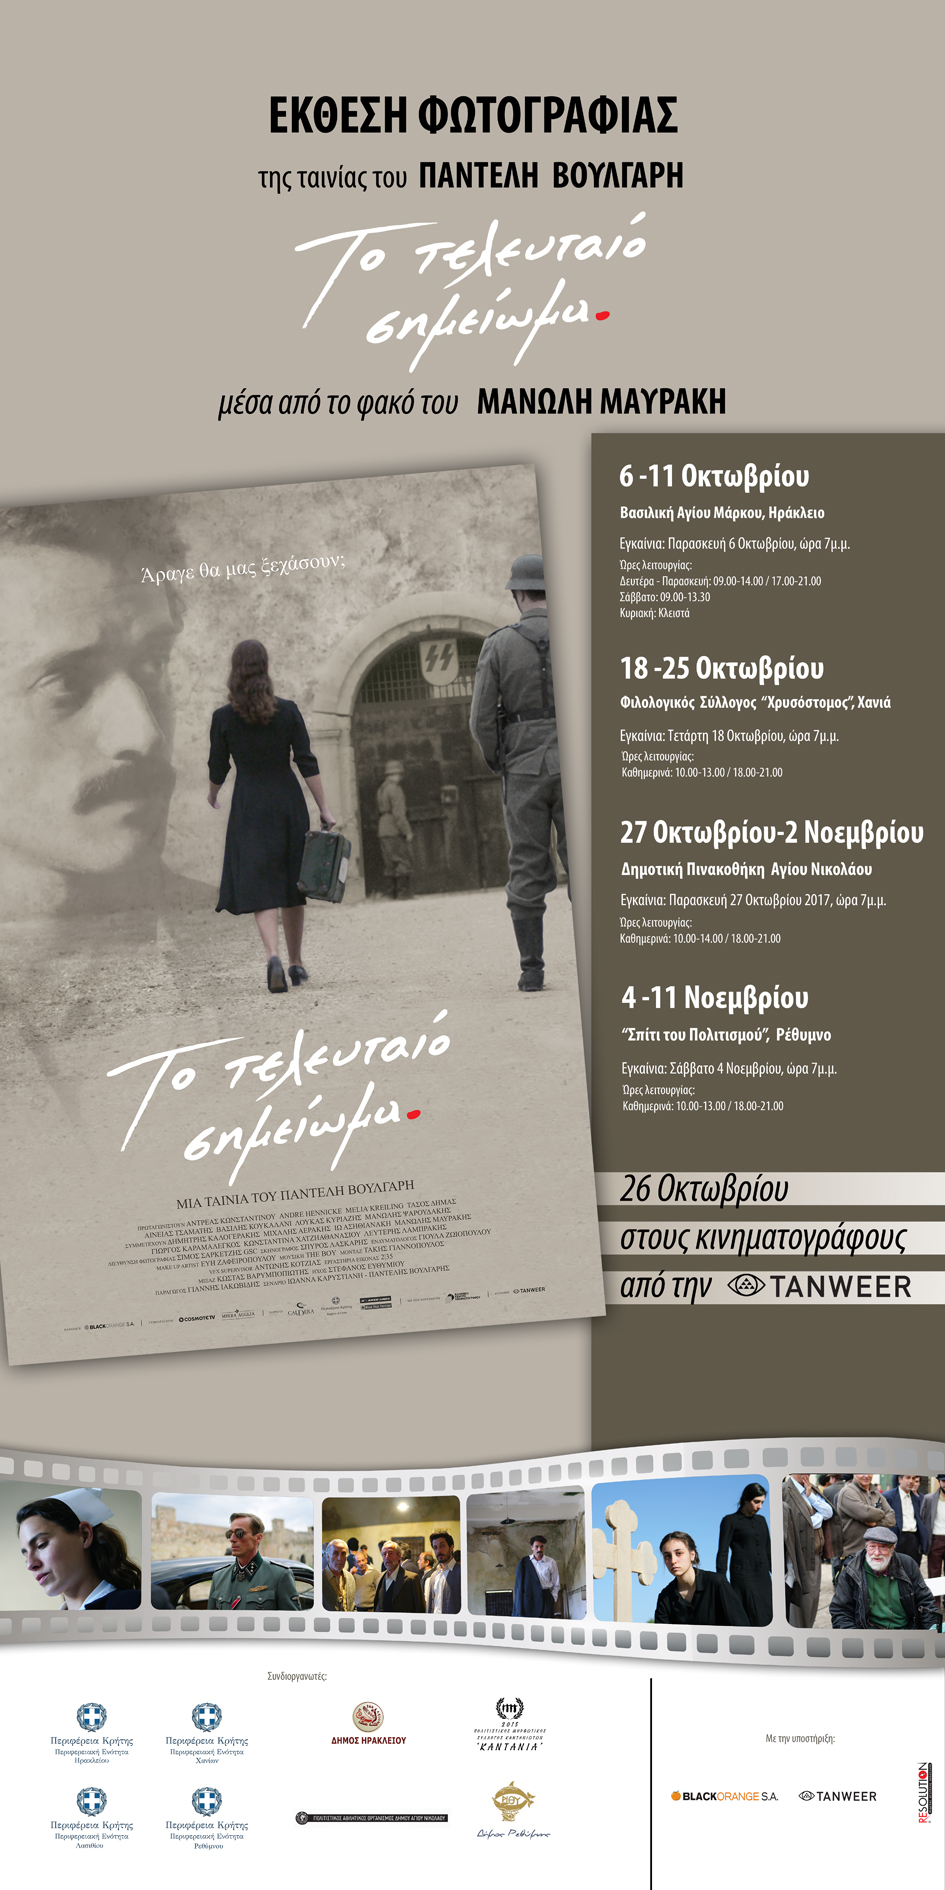 Έκθεση φωτογραφίας για την ταινία του Π. Βούλγαρη για την ζωή του Σουκατζίδη (Trailer)